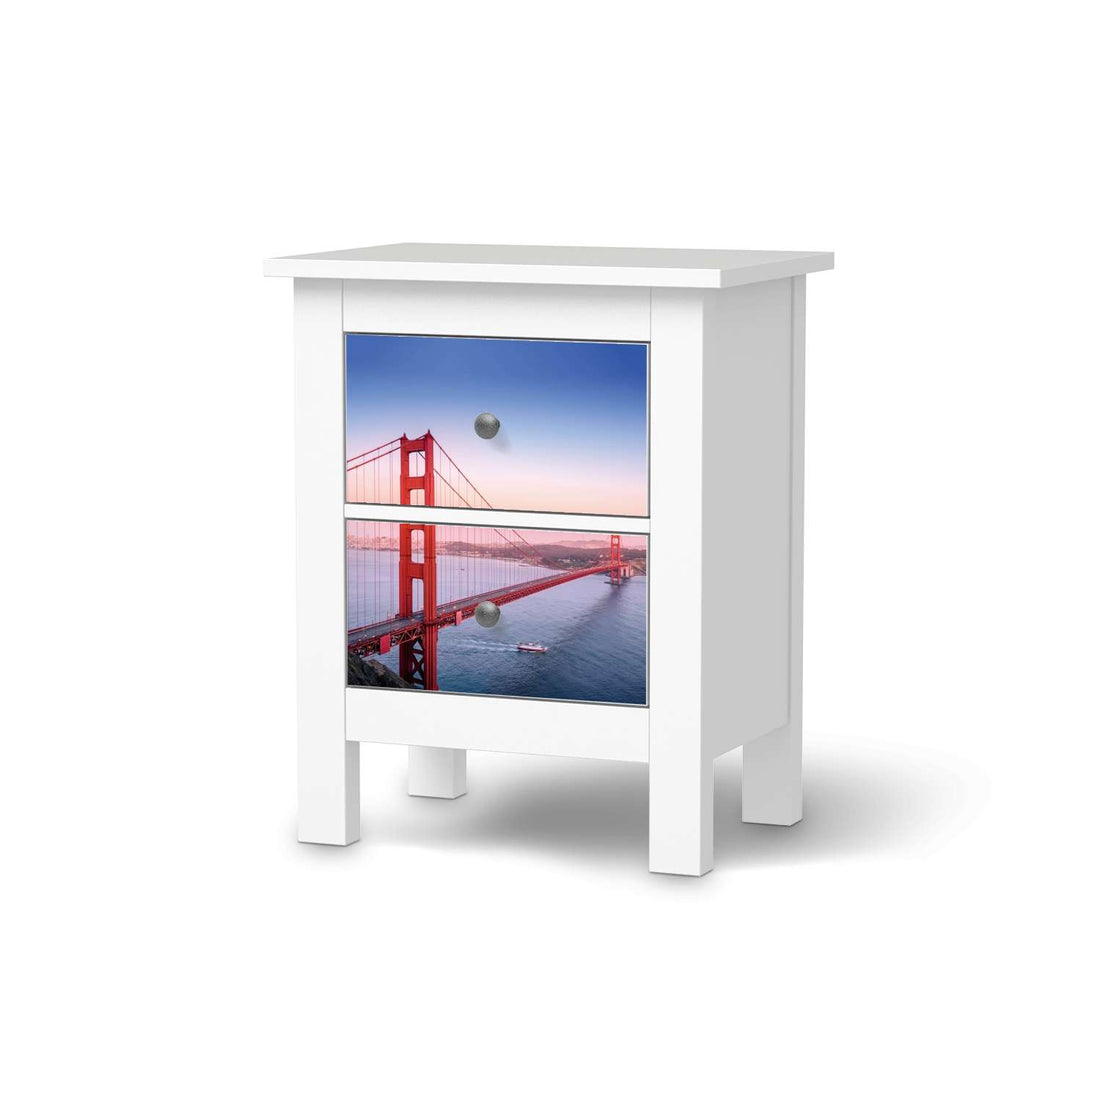 Selbstklebende Folie Golden Gate - IKEA Hemnes Kommode 2 Schubladen  - weiss